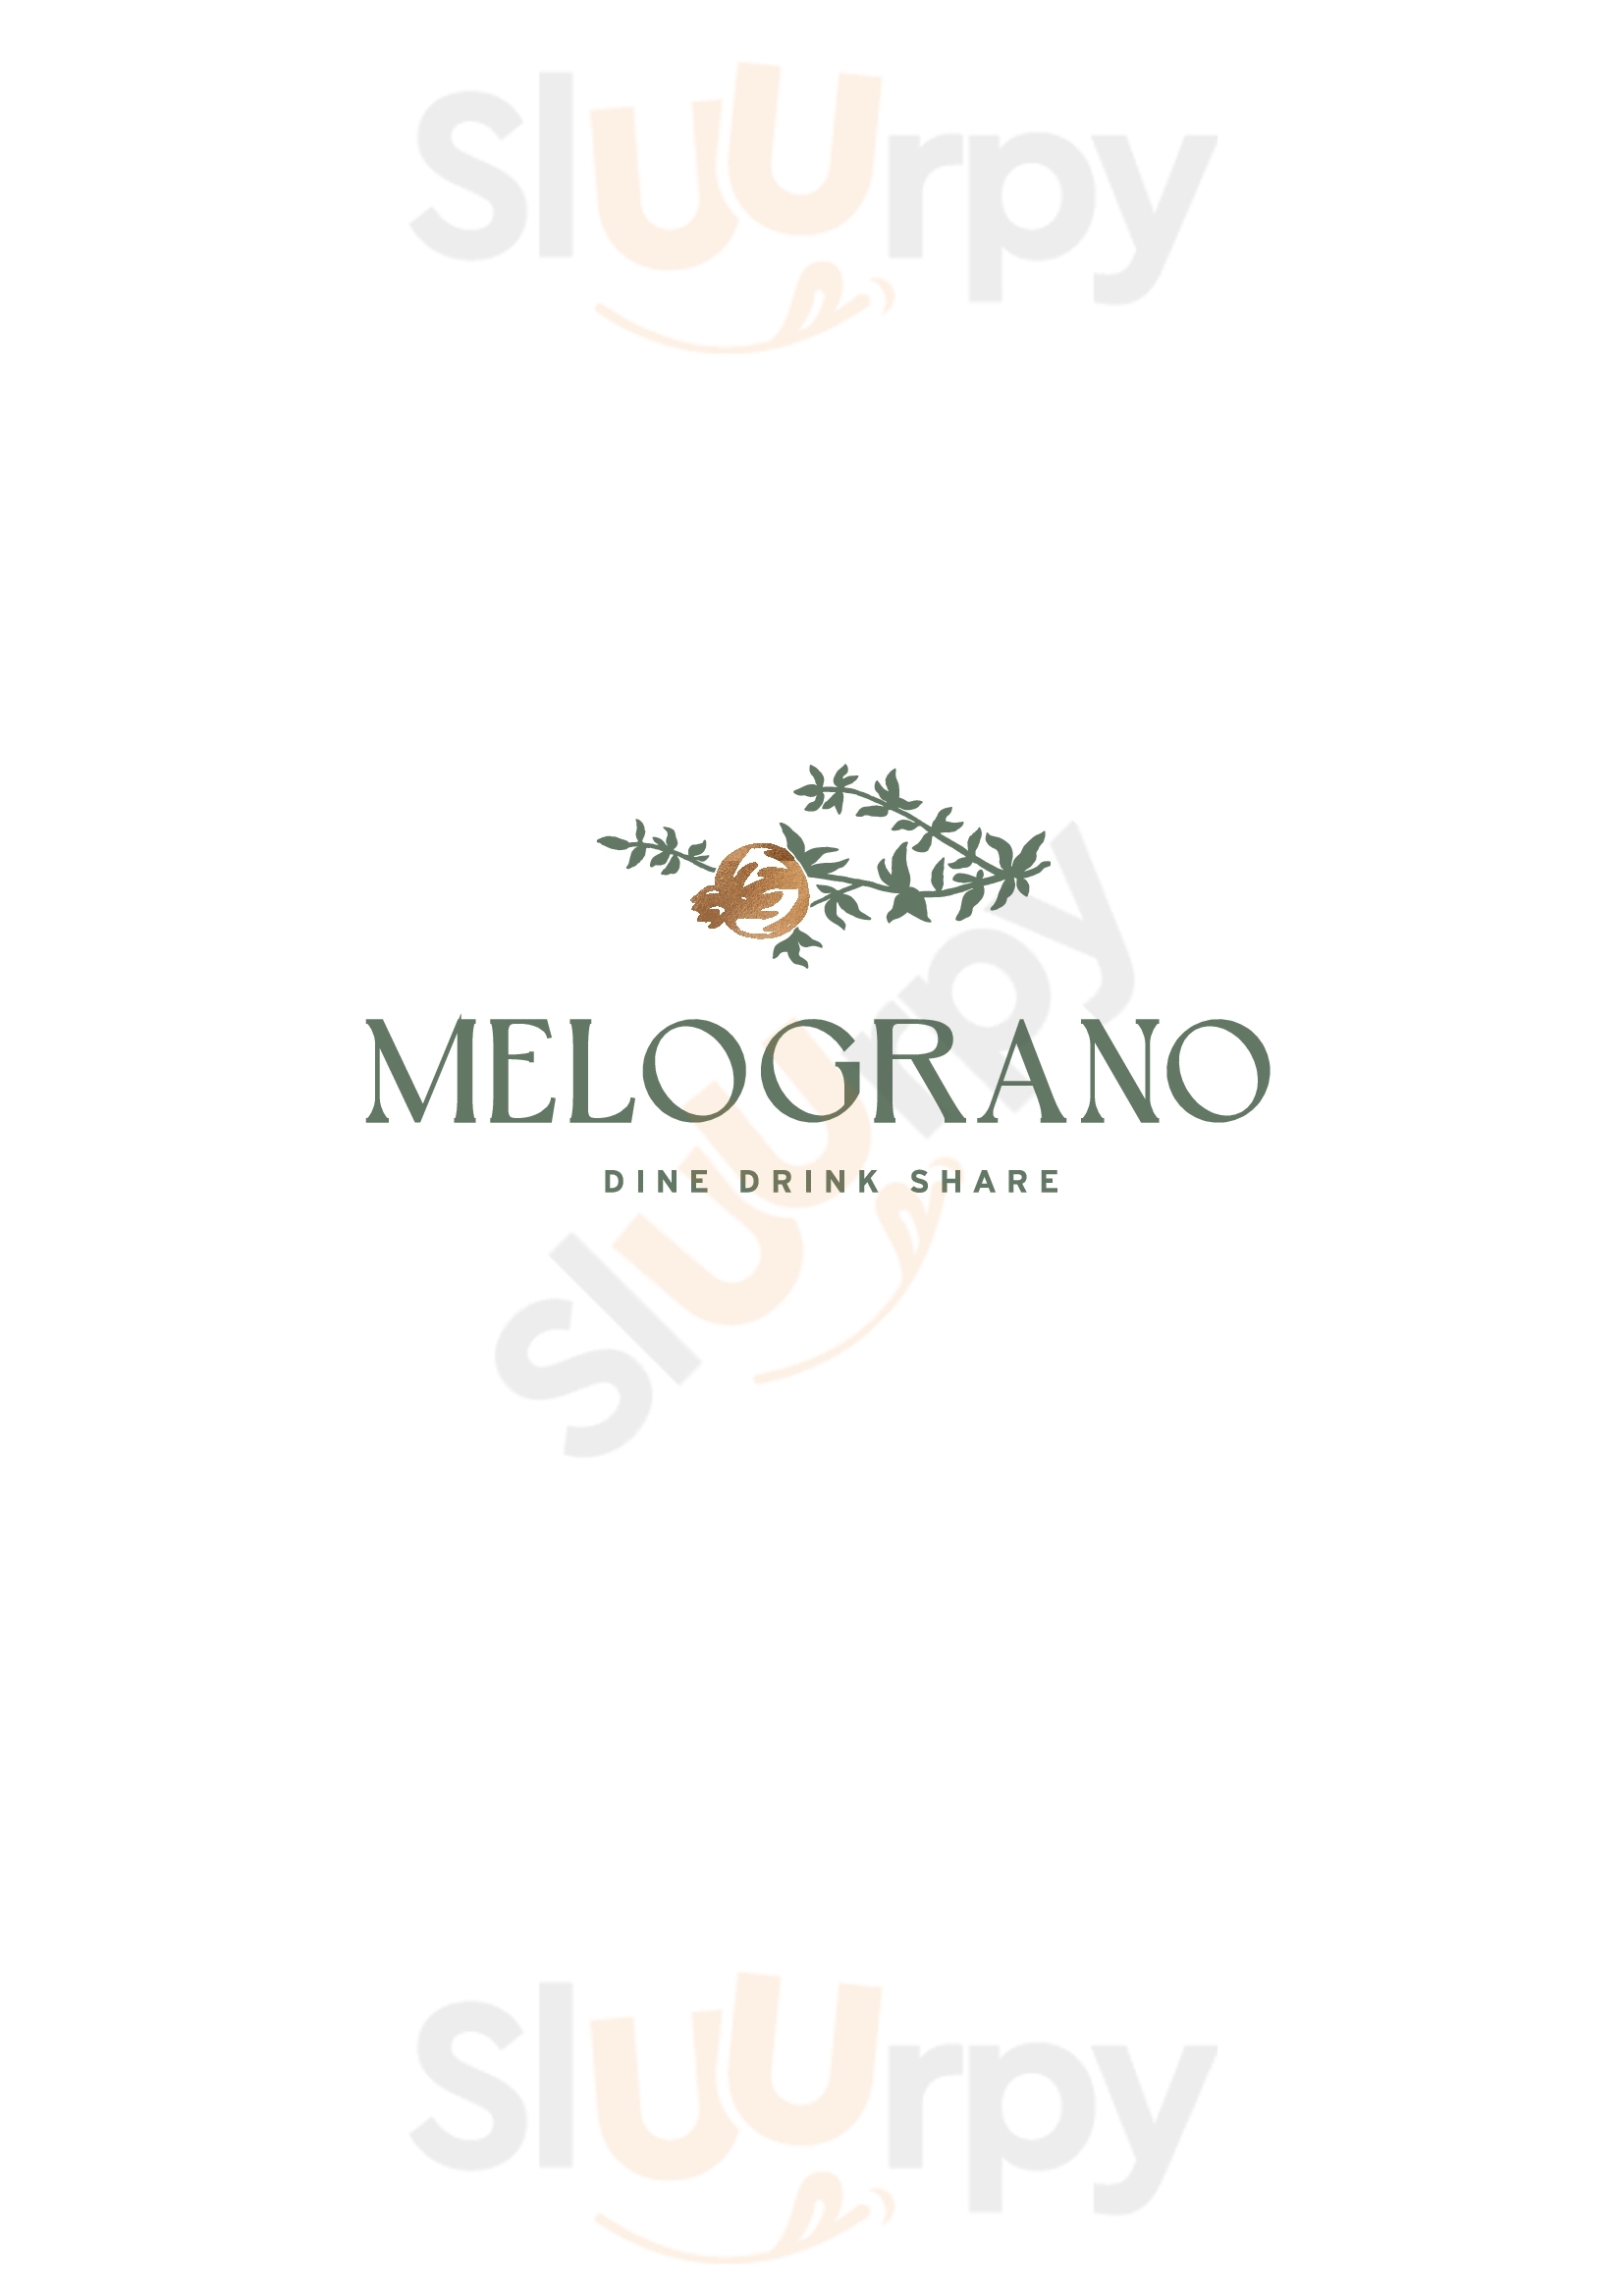 Melograno Restaurant Αργοστόλι Menu - 1